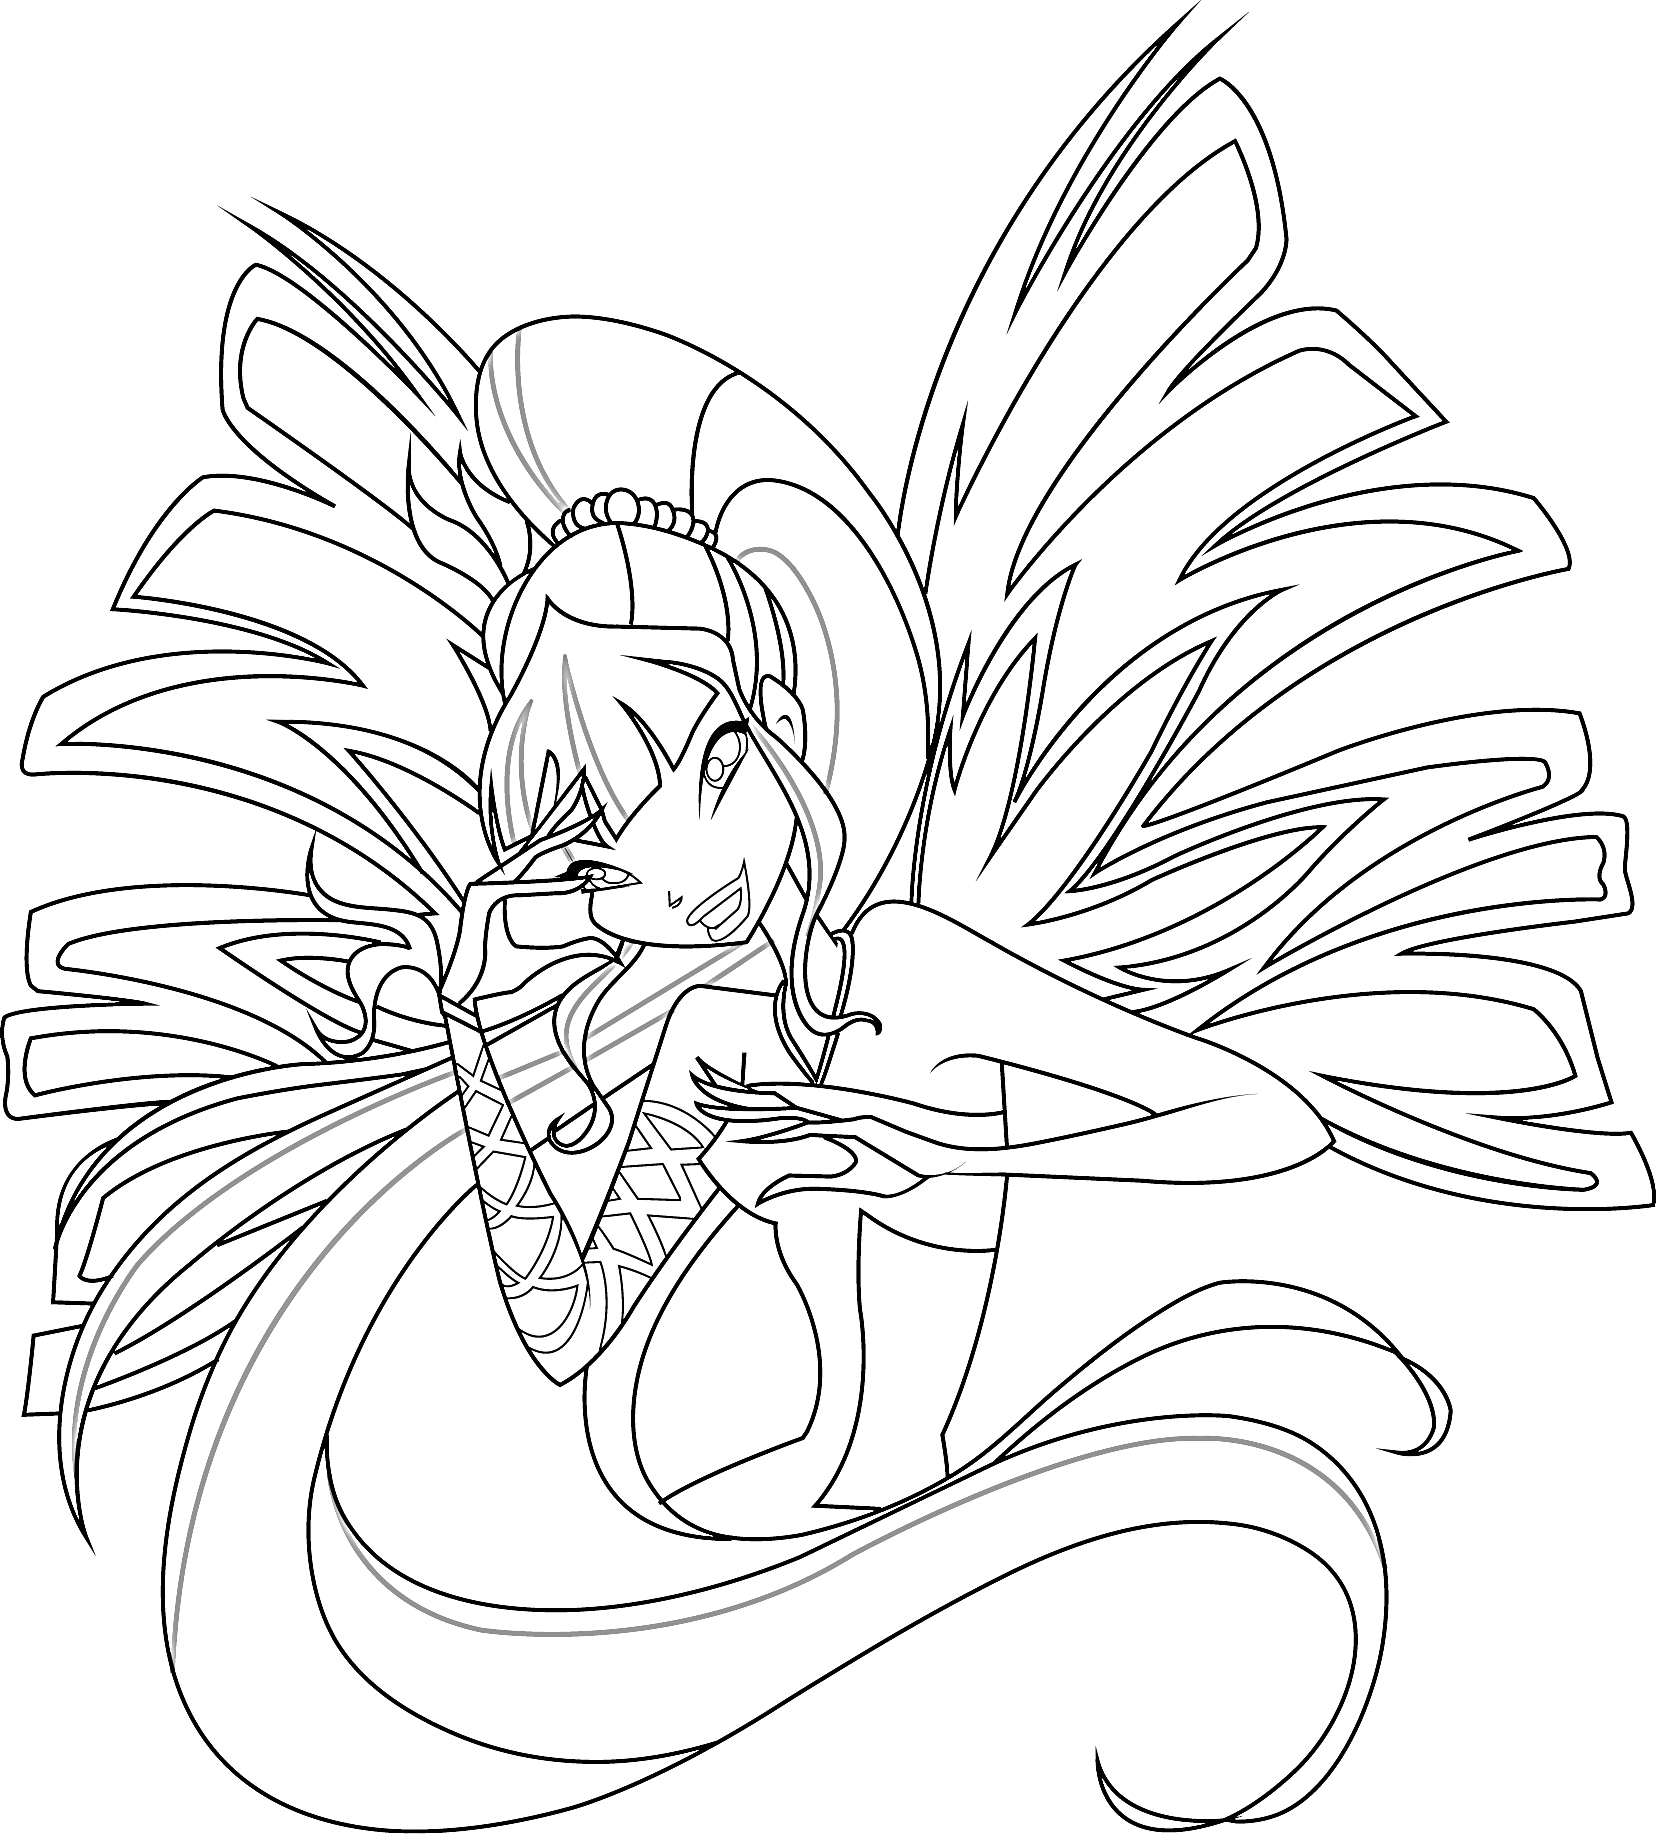 Раскраска Фея Винкс Сиреникс с большими крыльями, длинными волосами и серьёзным выражением лица